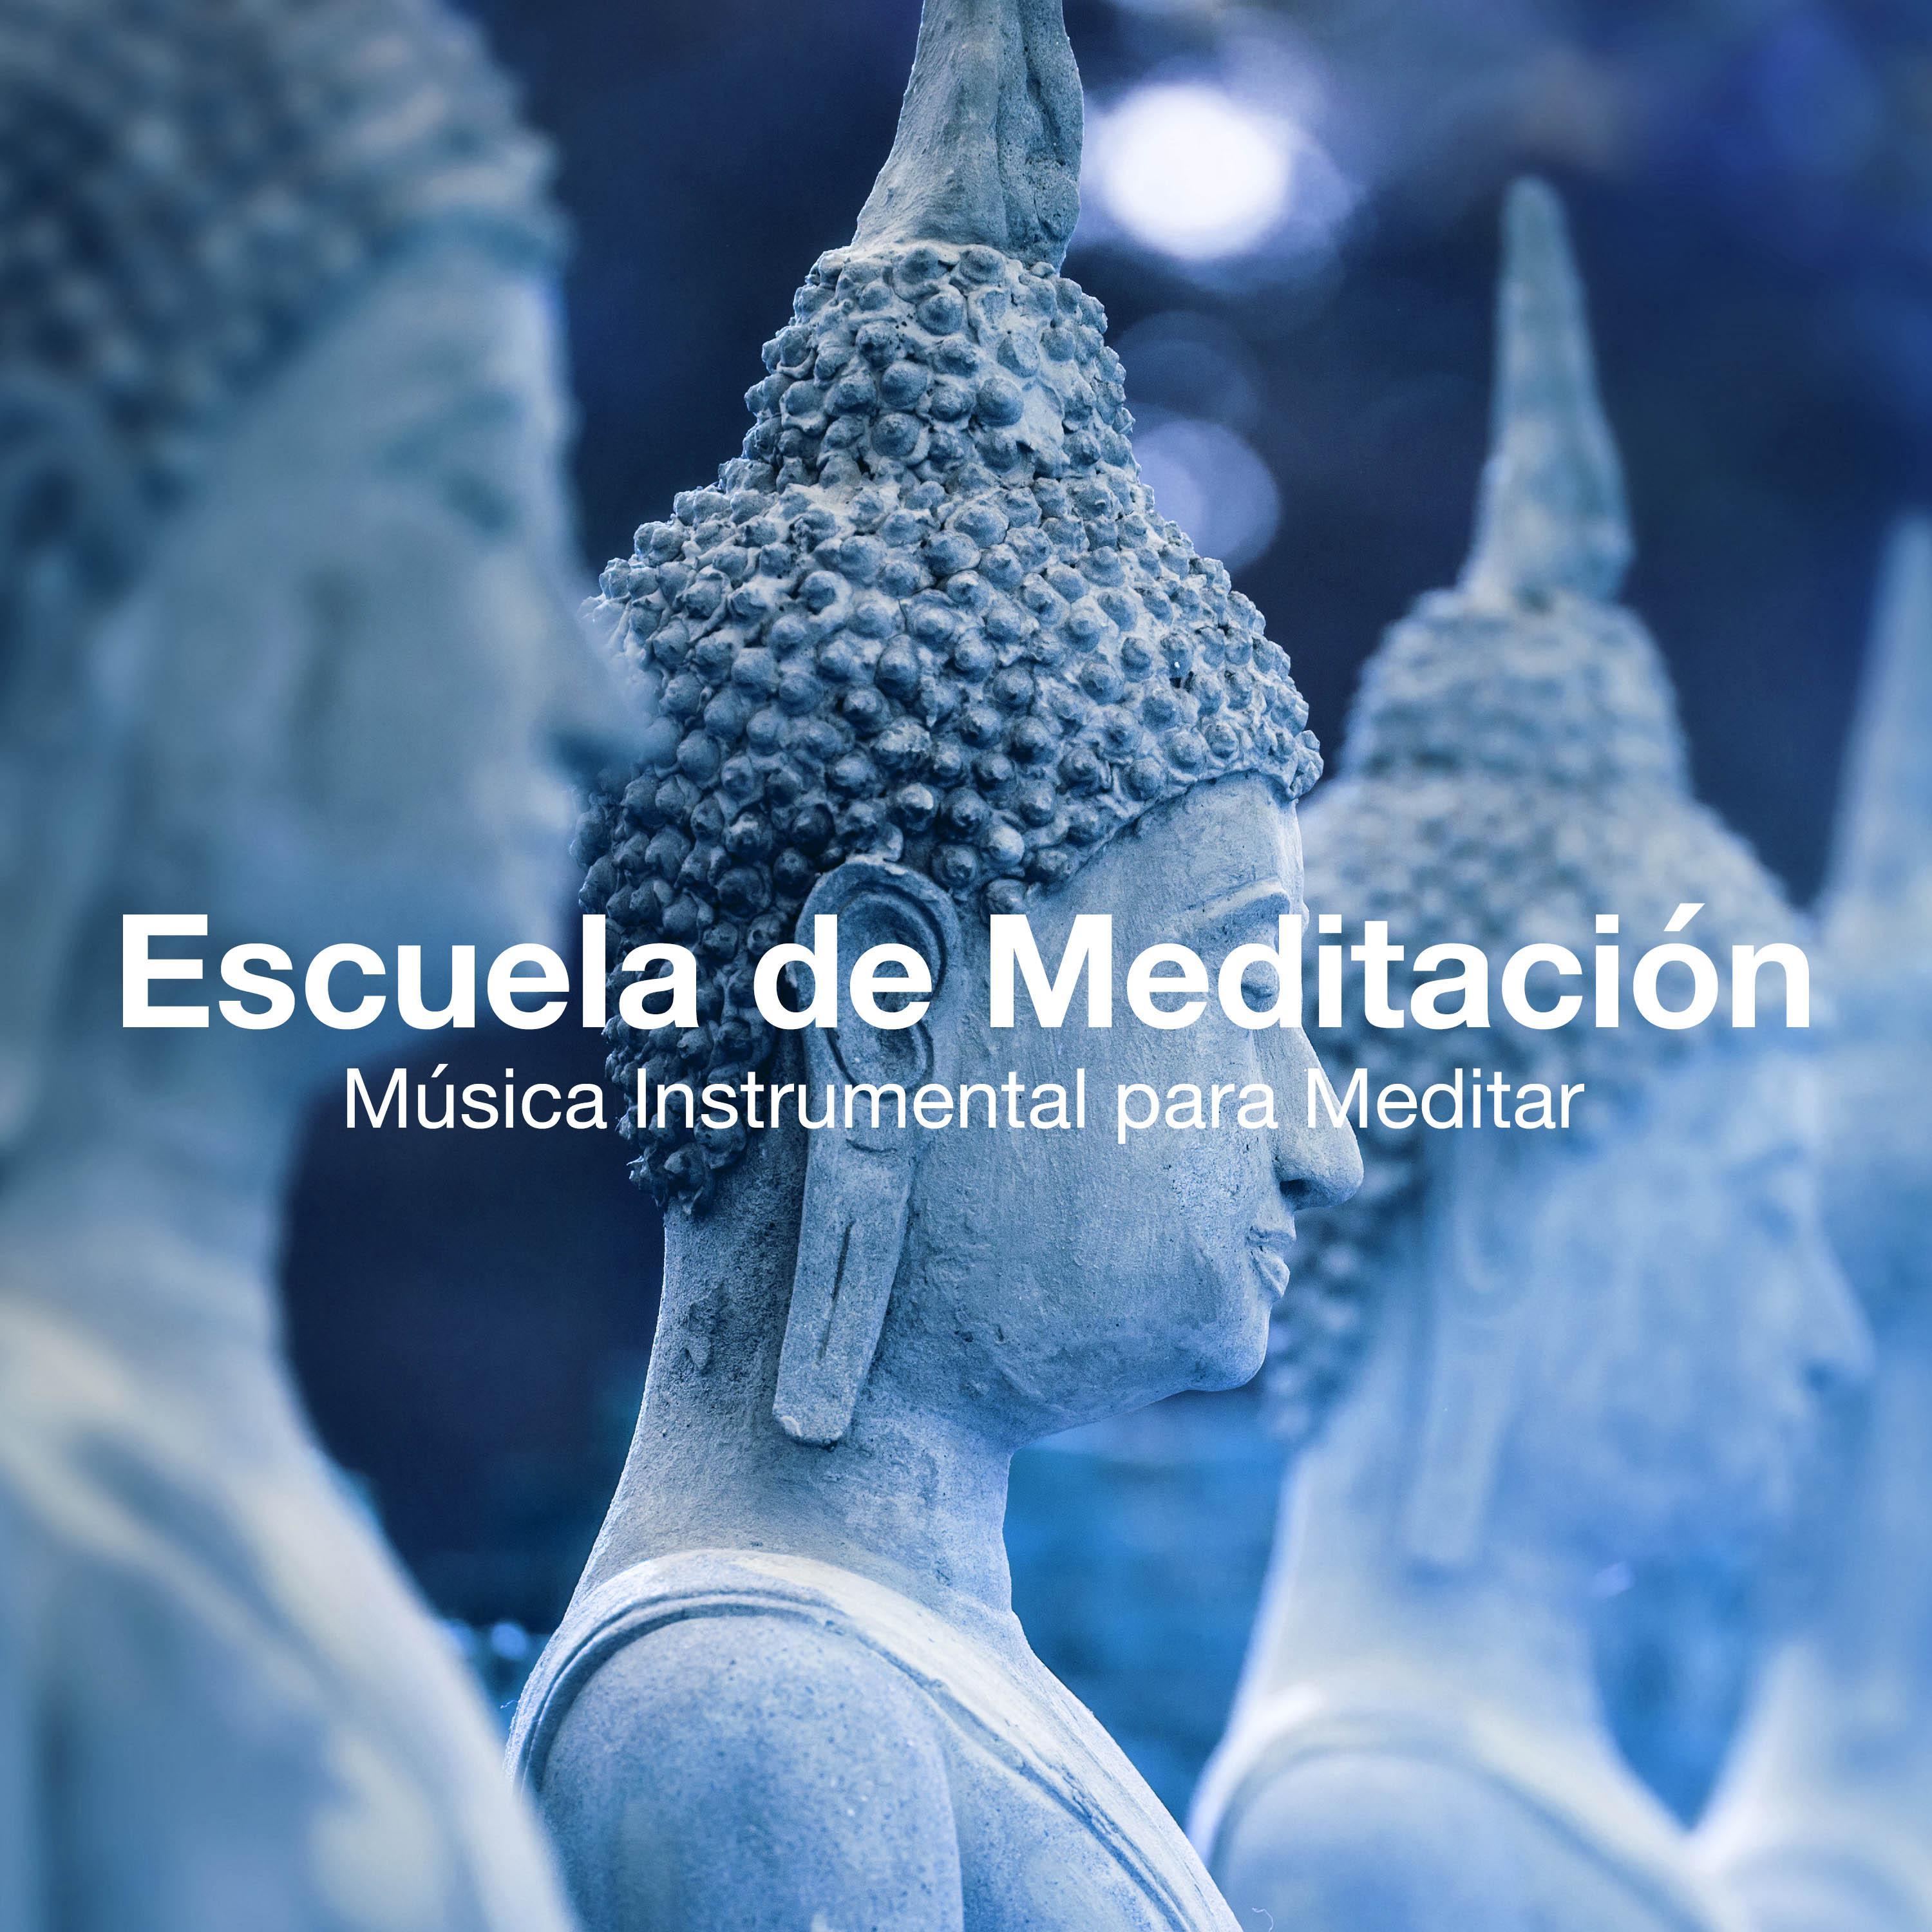 Escuela de Meditación: Música Instrumental para Meditar, Hacer Yoga, Relajarse, Lograr la Paz Interior